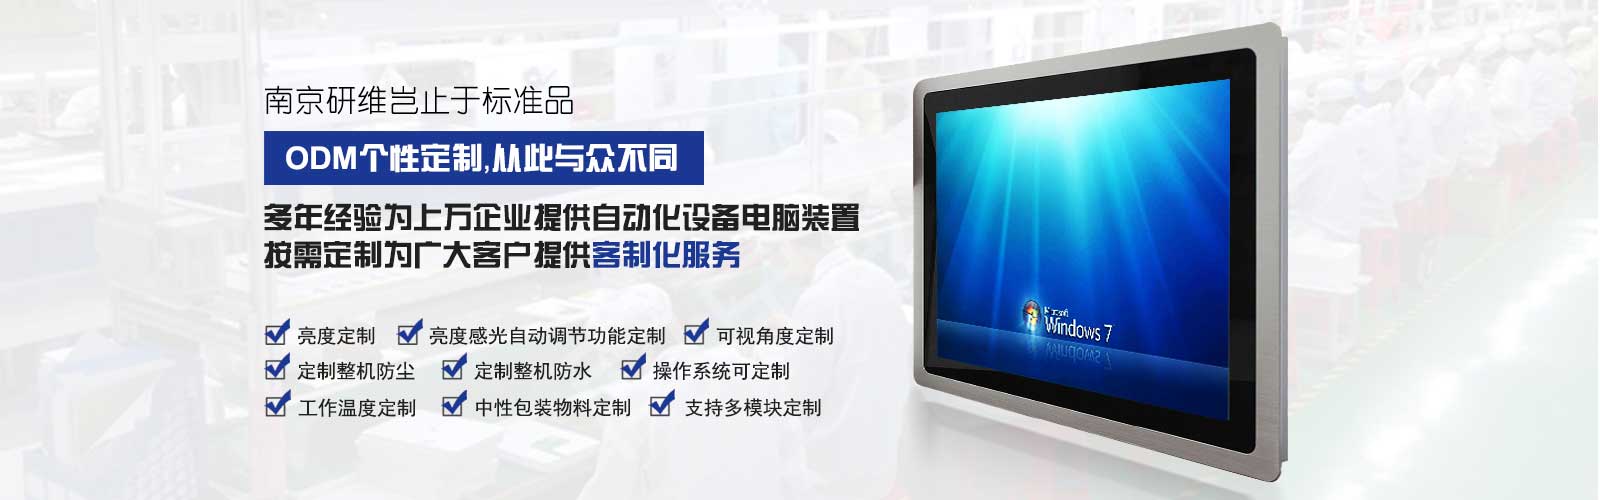 广东会工業電腦一體機支持ODM個性化定製服務，包括亮度、分辨率、防水防塵、多模塊、工作溫度、可視角度等